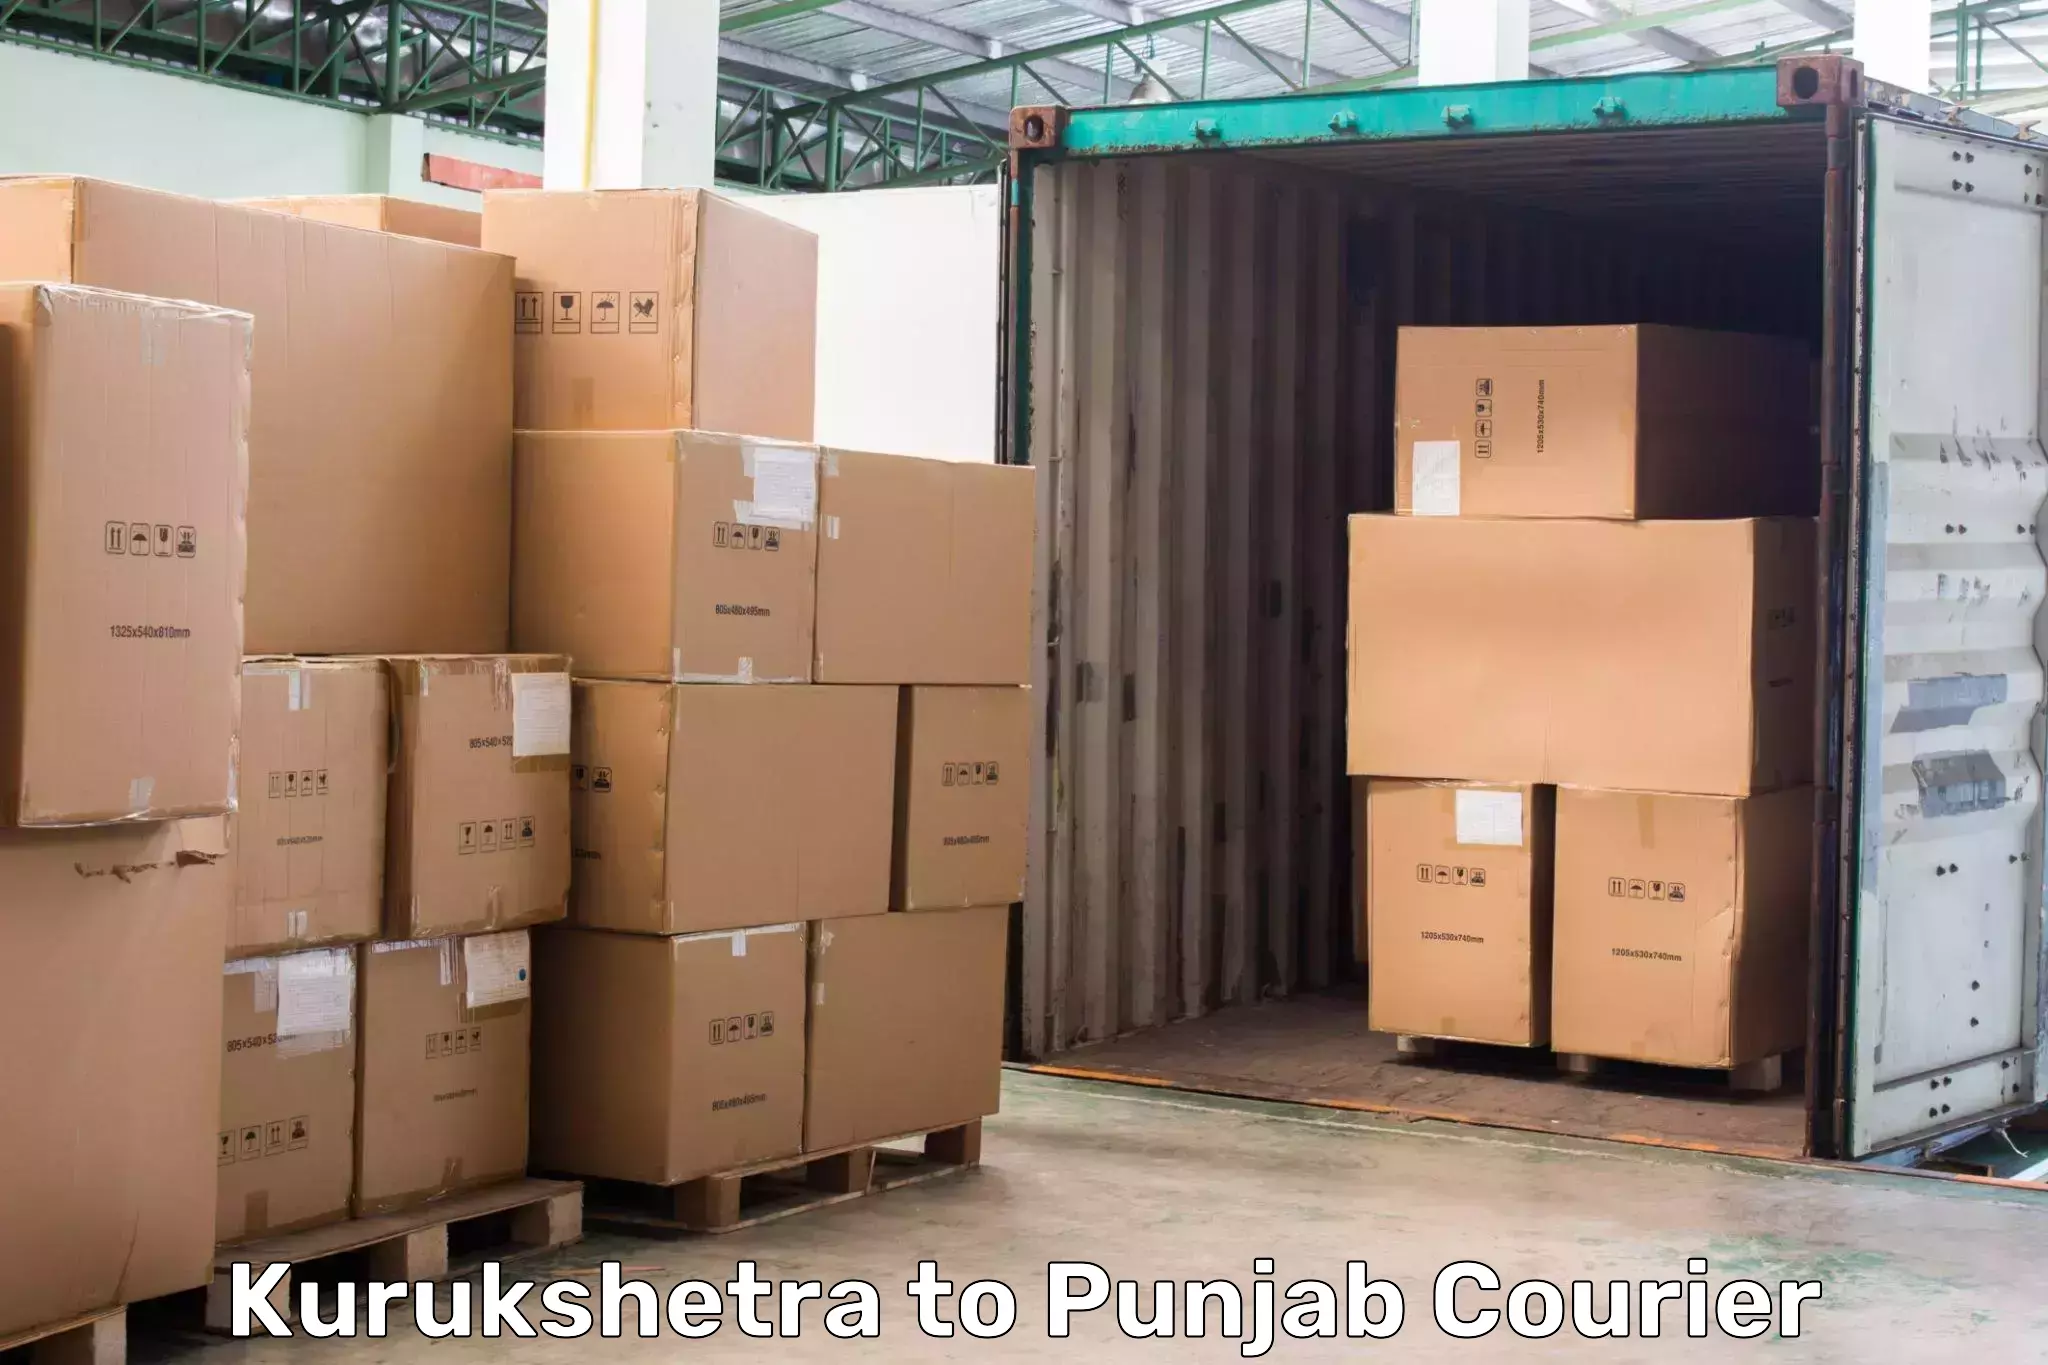 Package tracking Kurukshetra to Punjab